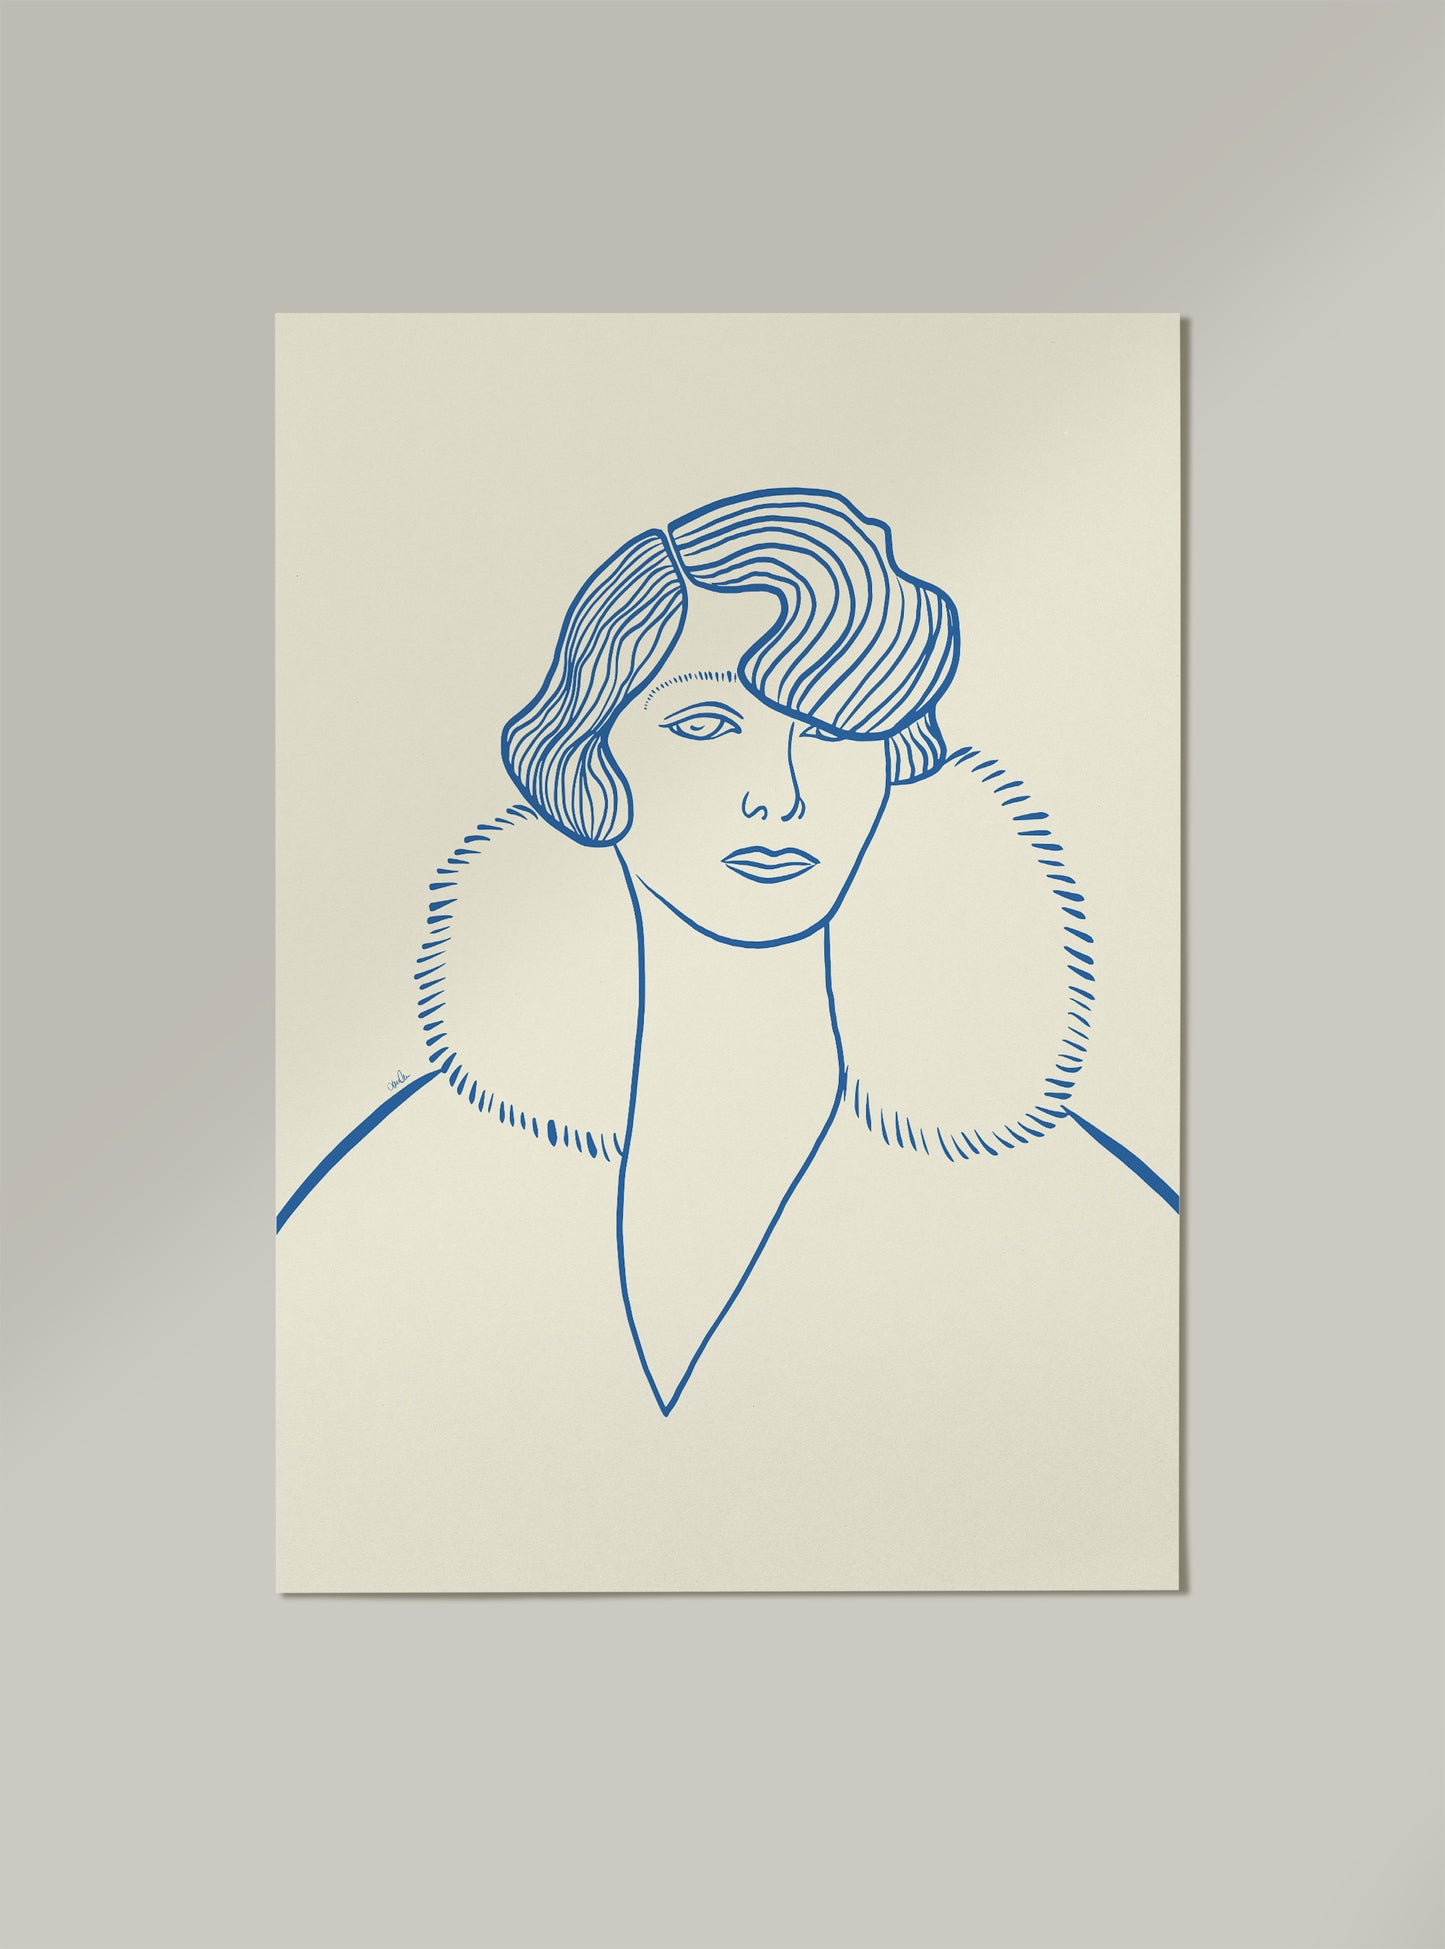 Strektegning av kvinne, blåtoner. Poster